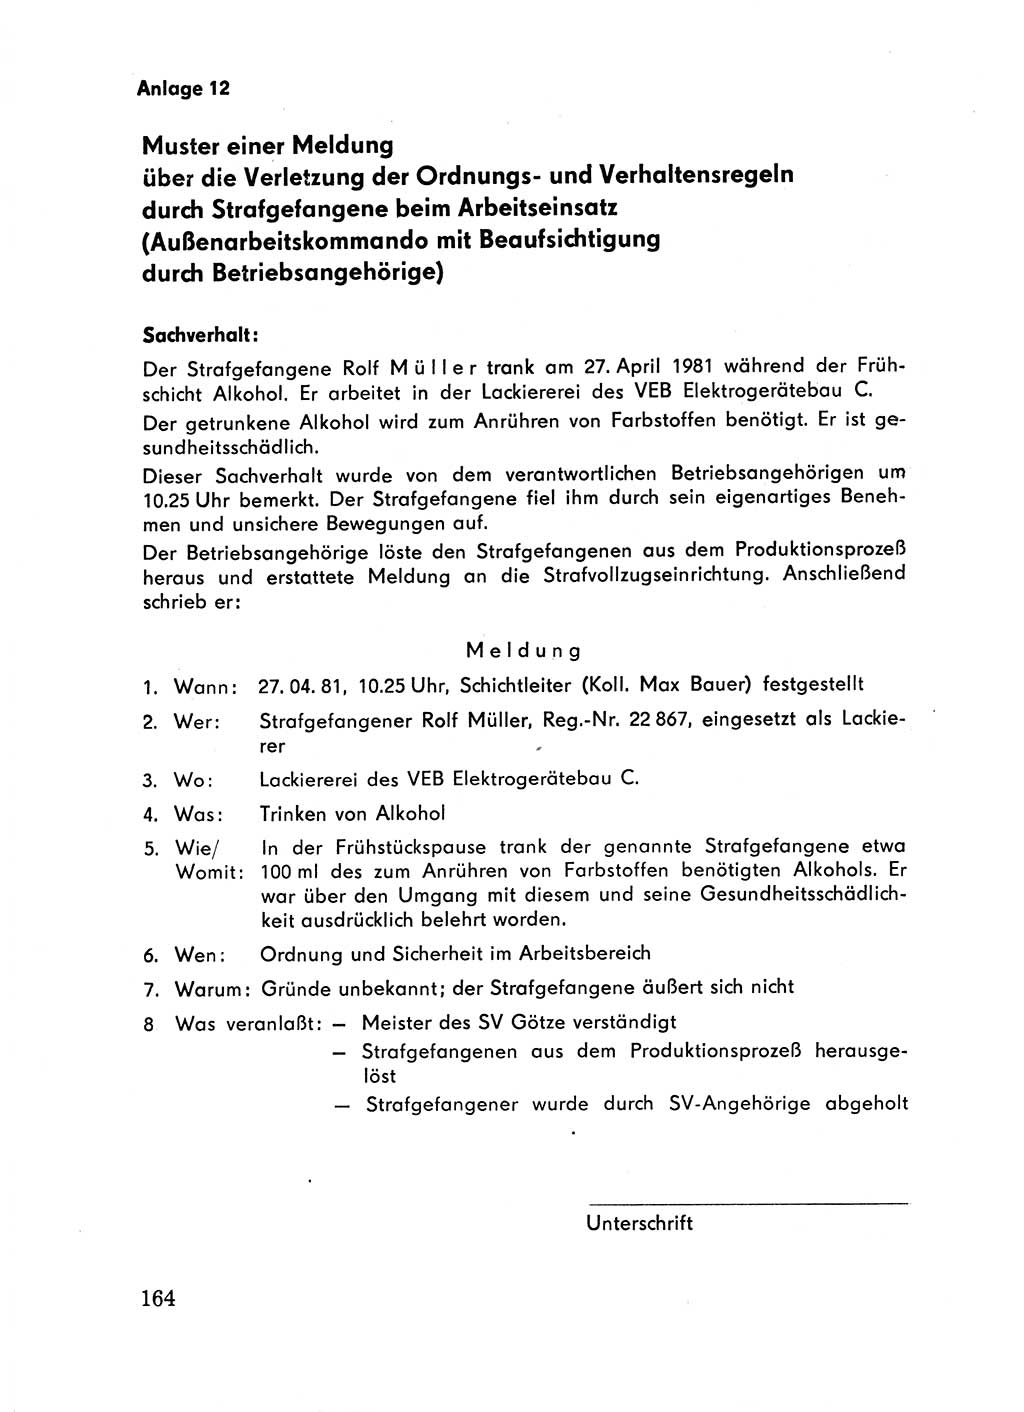 Handbuch für Betriebsangehörige, Abteilung Strafvollzug (SV) [Ministerium des Innern (MdI) Deutsche Demokratische Republik (DDR)] 1981, Seite 164 (Hb. BA Abt. SV MdI DDR 1981, S. 164)